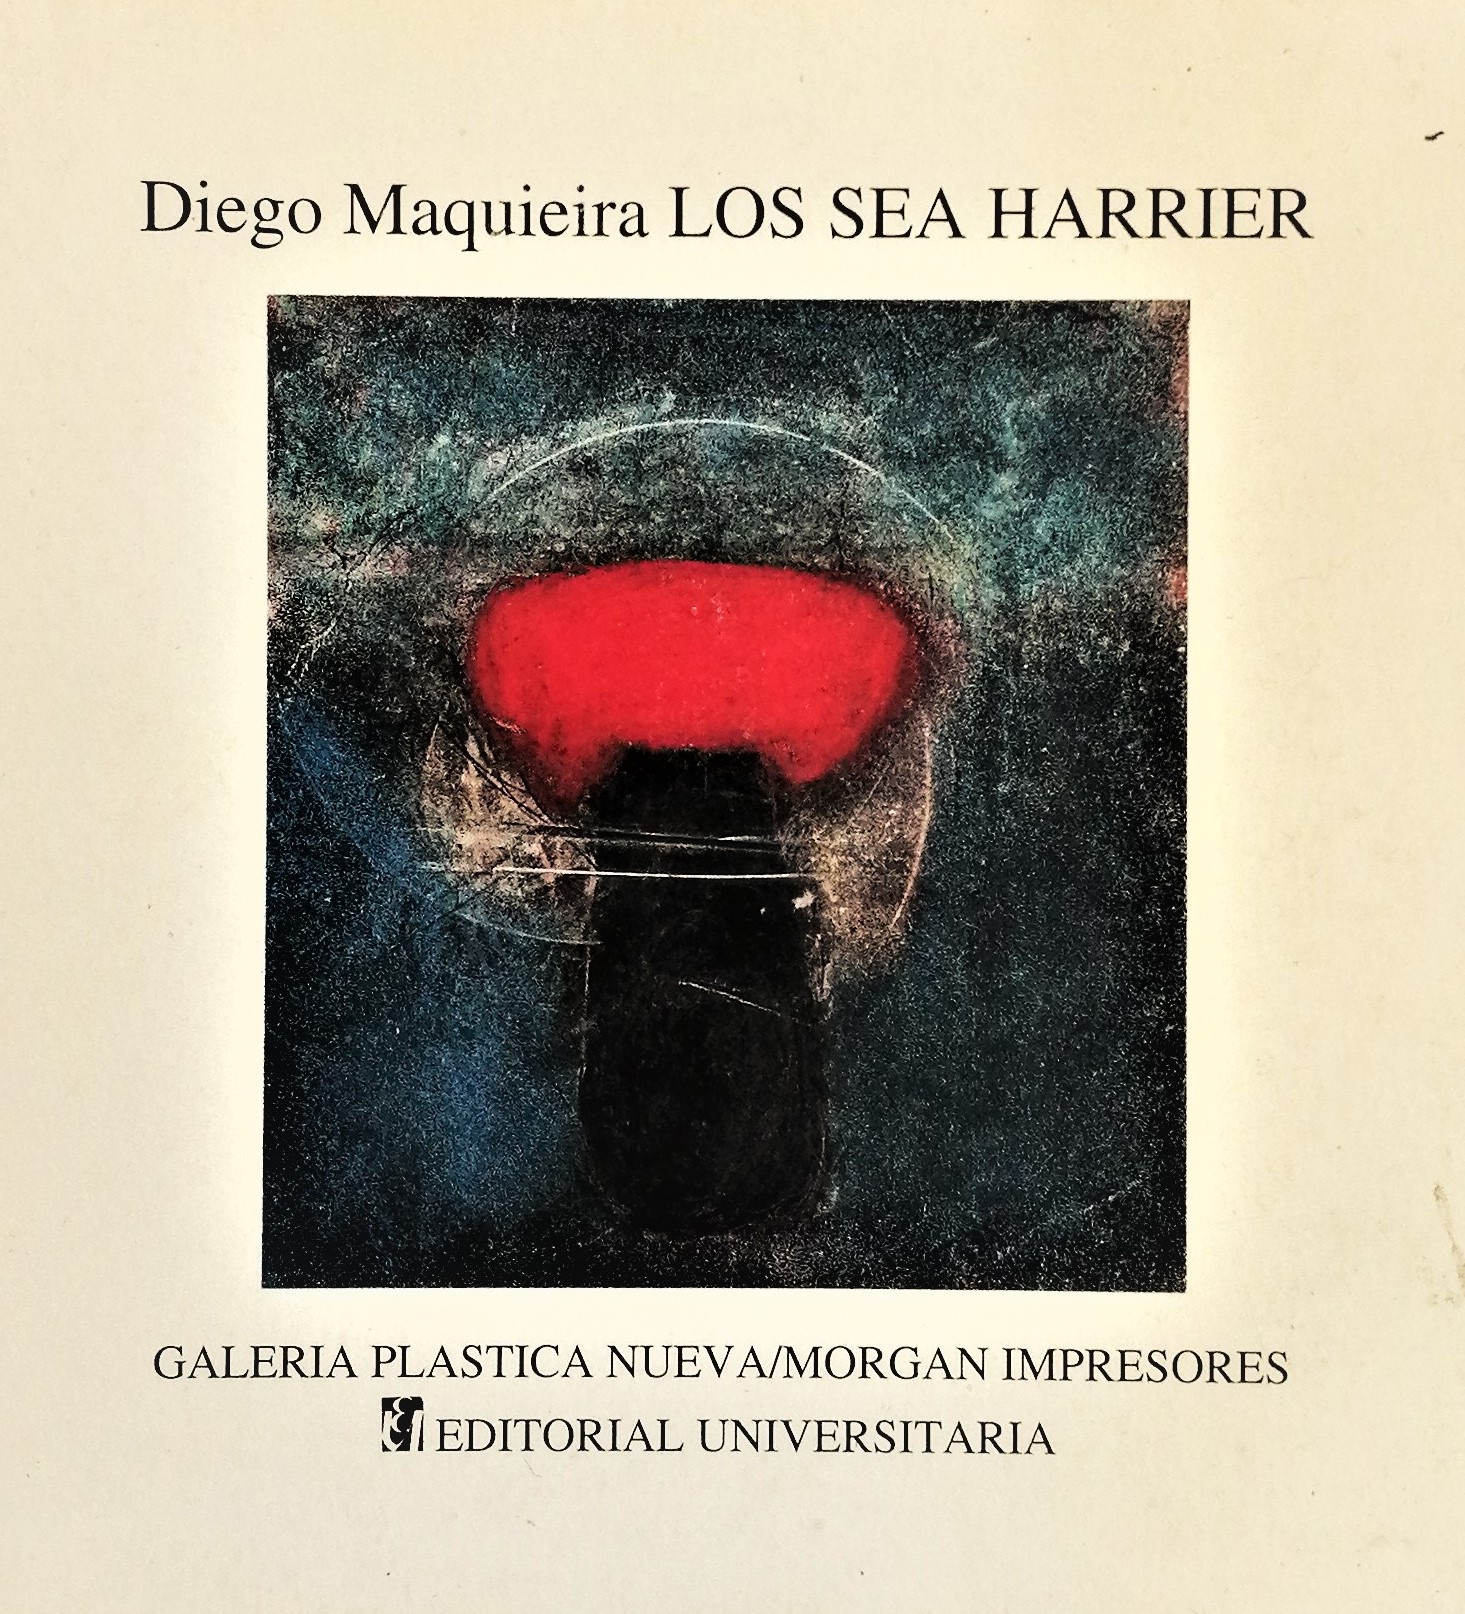 Diego Maquieira - Los sea Harrier